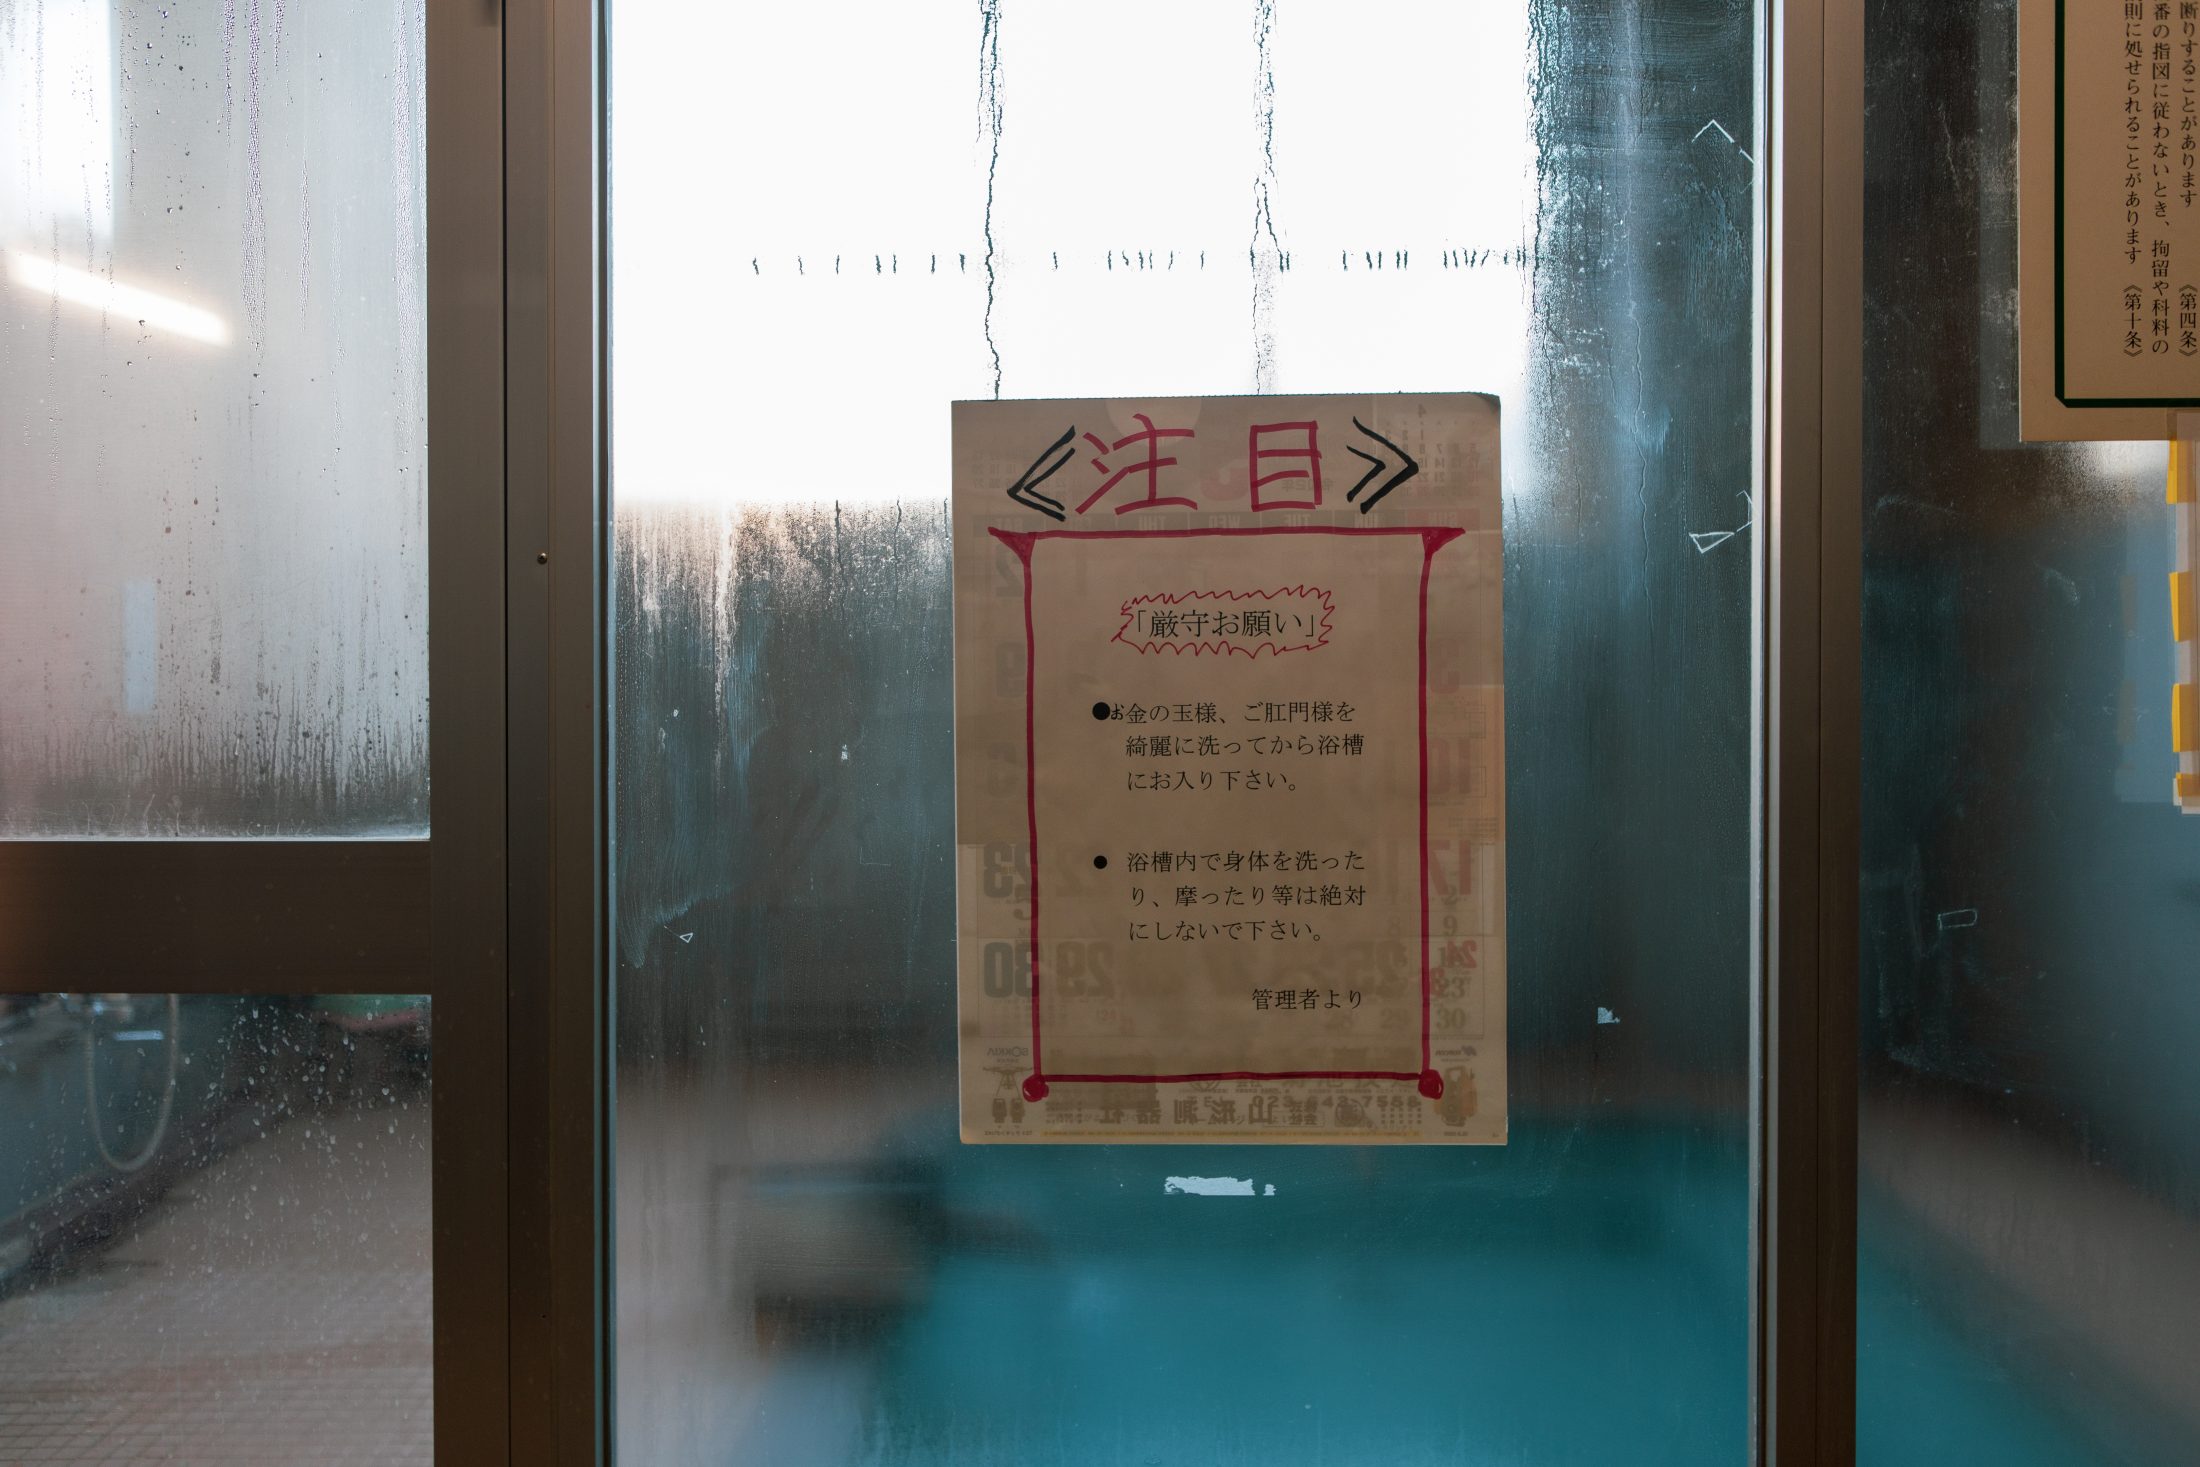 上山温泉の原点・共同浴場の守り人